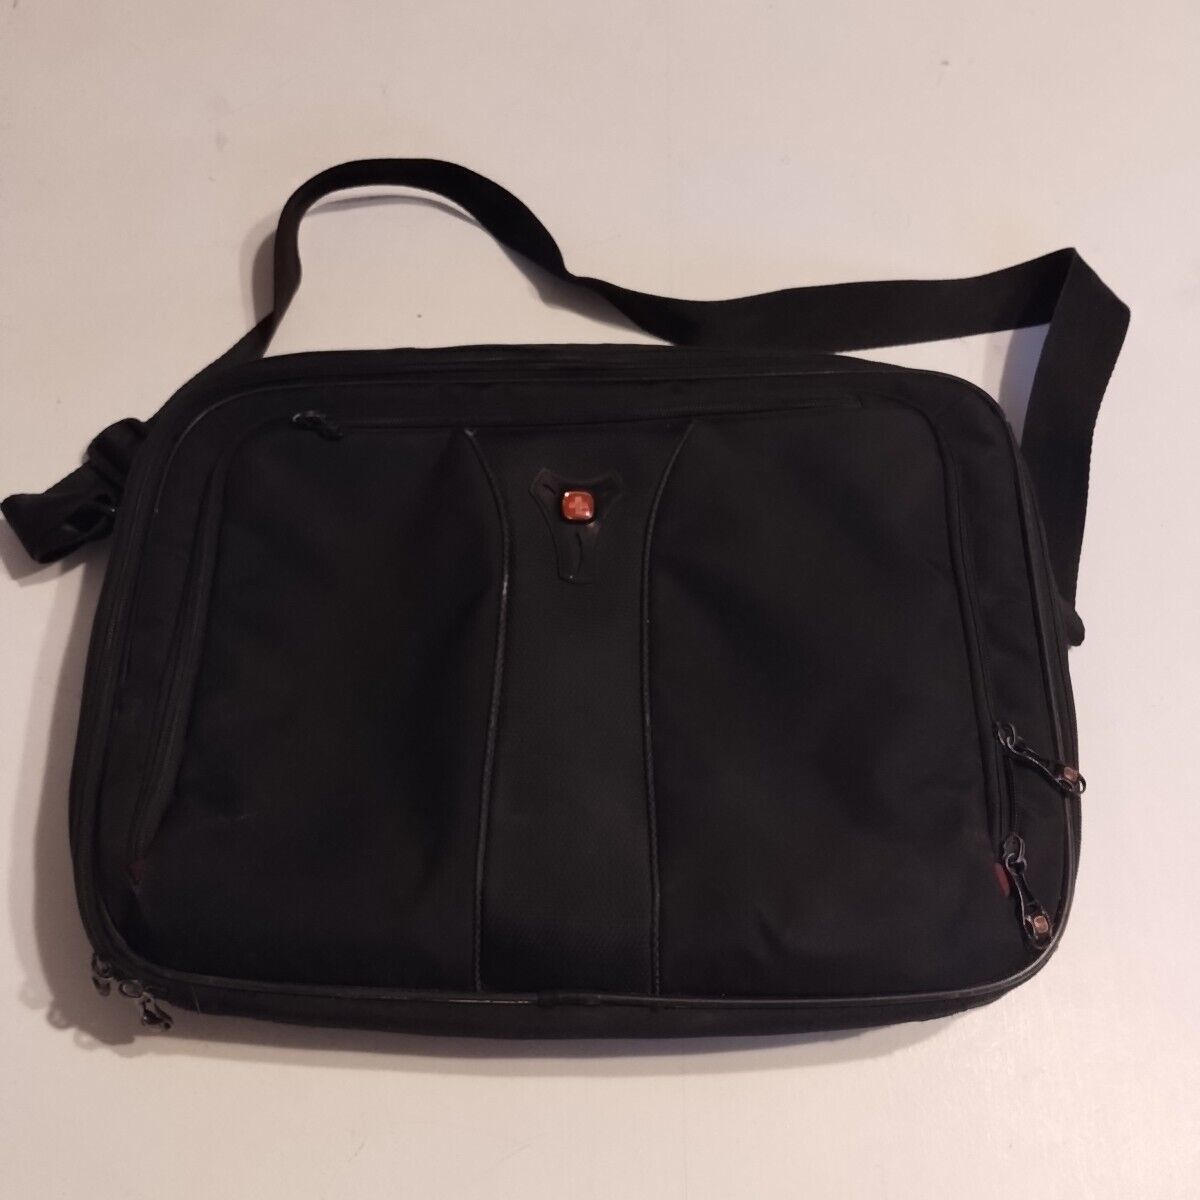 SWISS GEAR Laptop Shoulder Bag Travel Bag